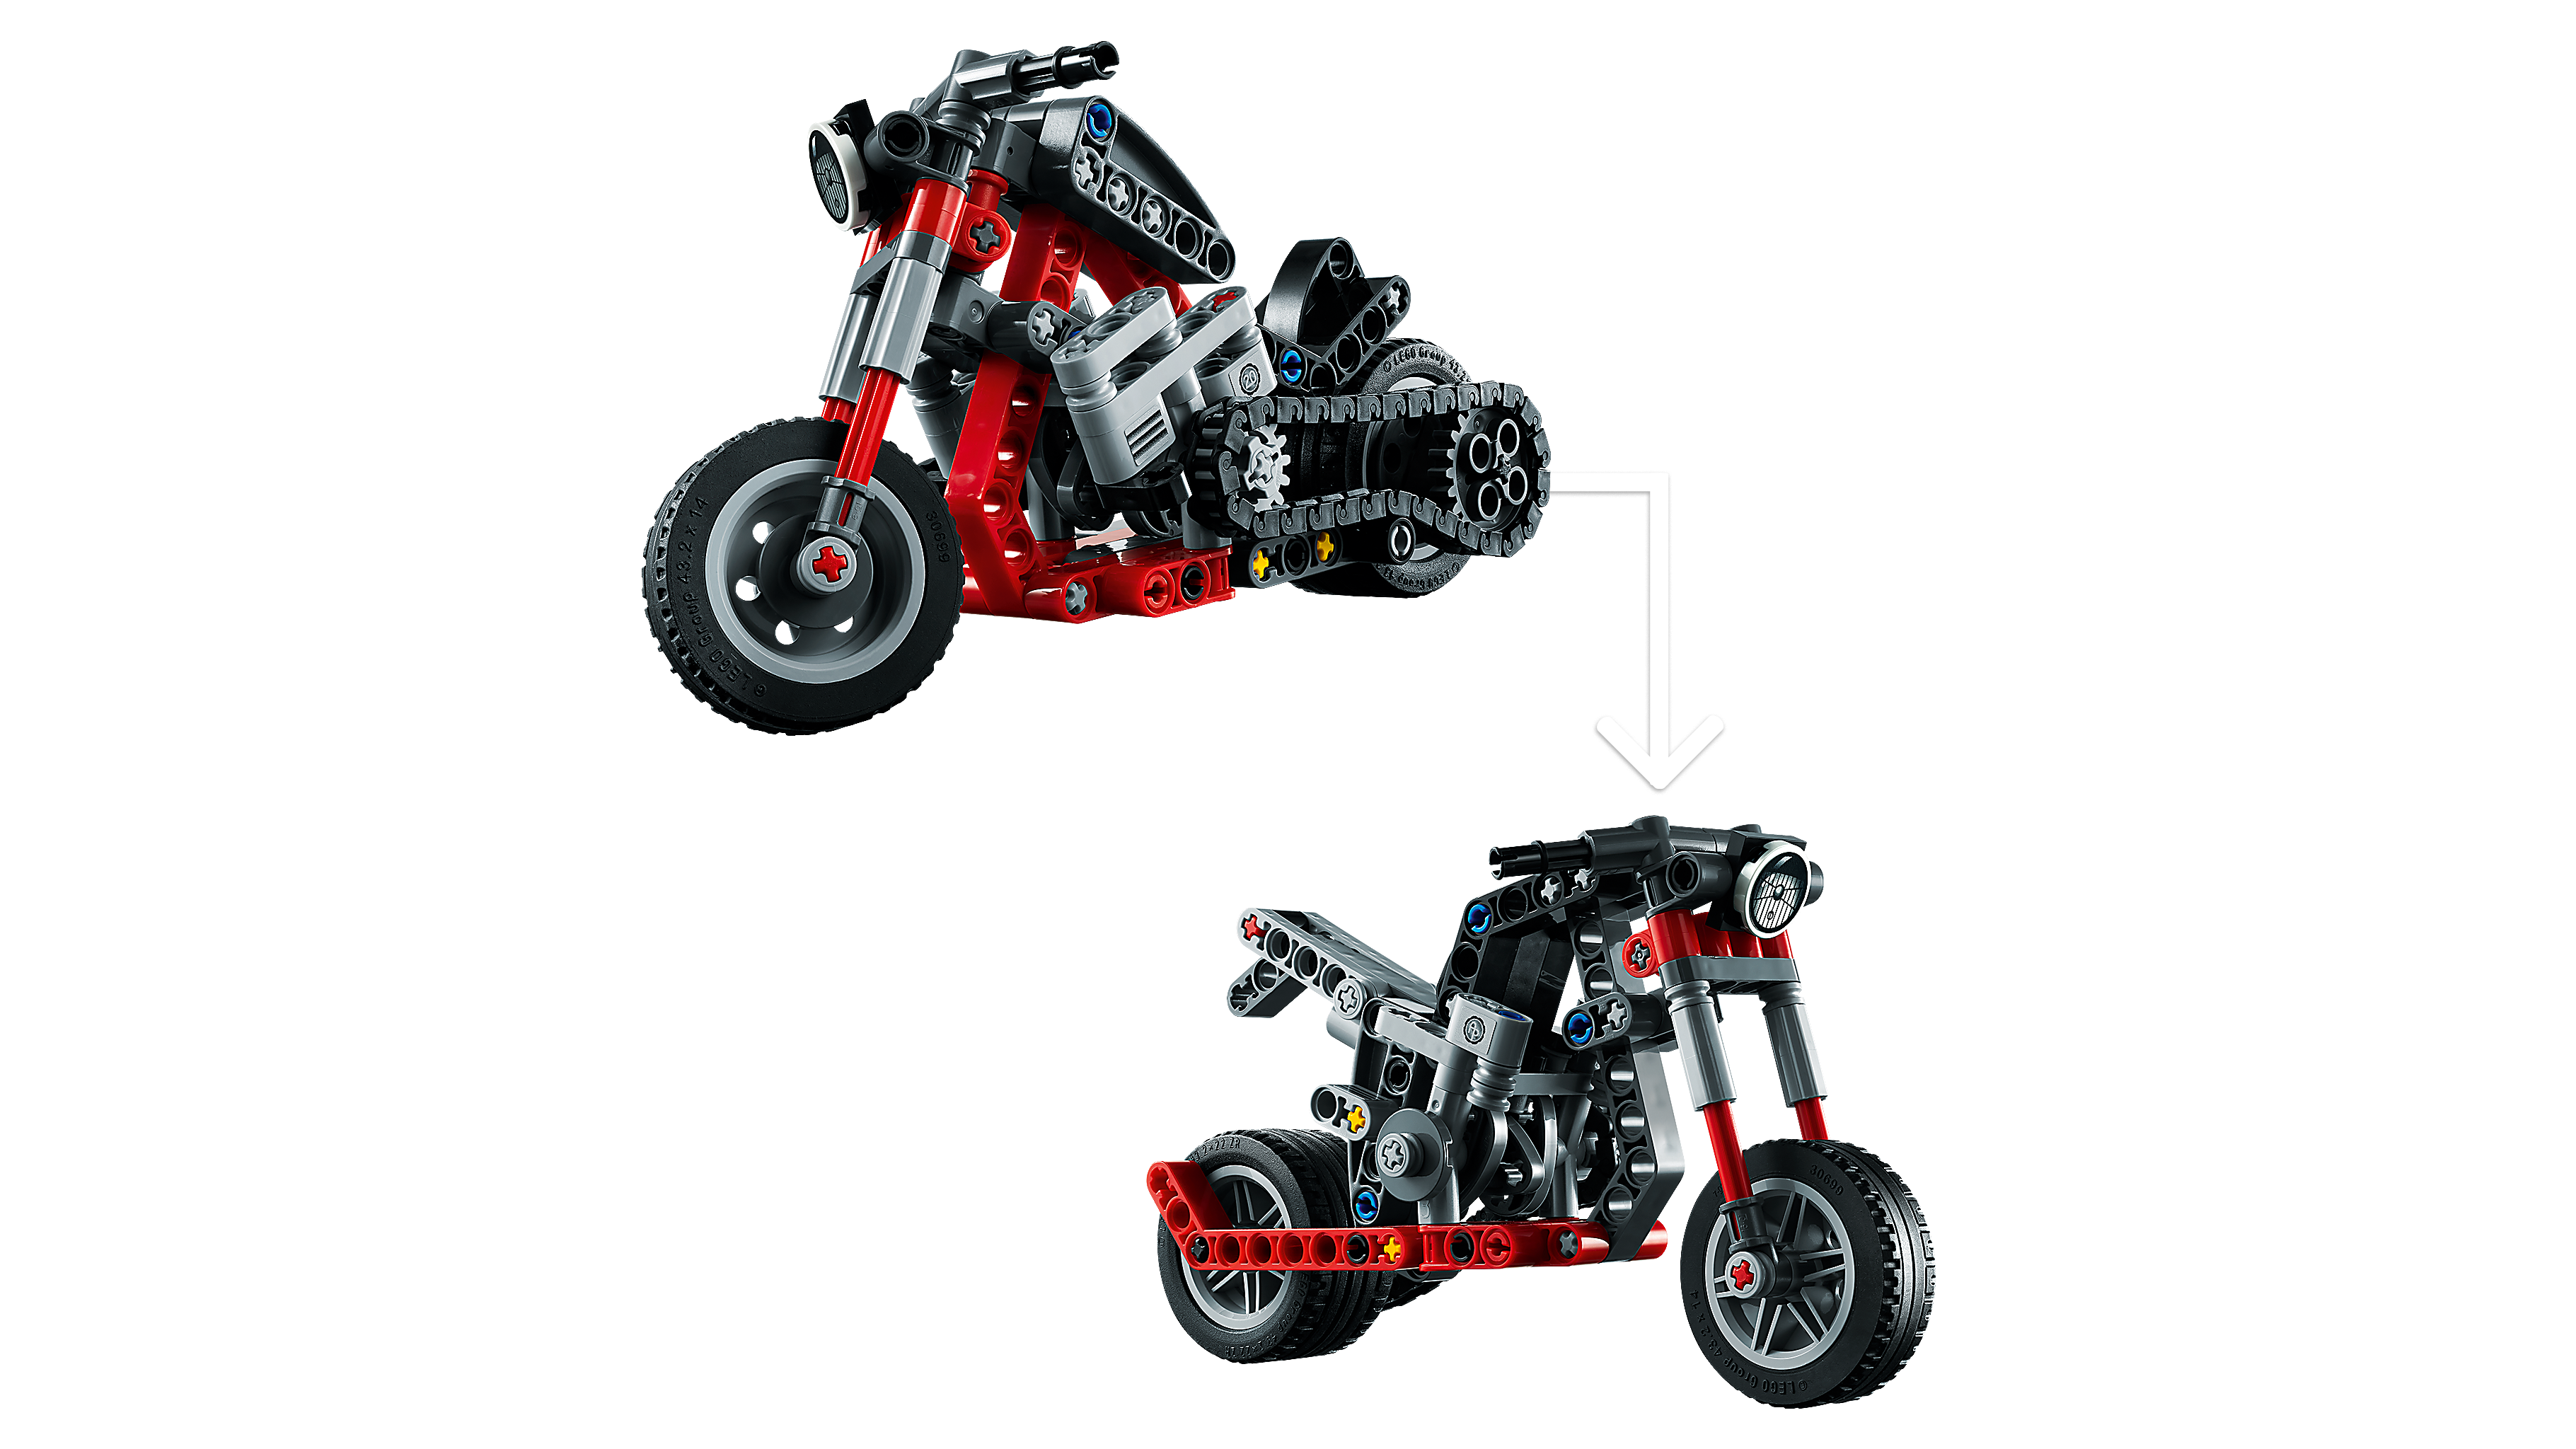 Lego et moto - une histoire qui s'assemble avec Technic.